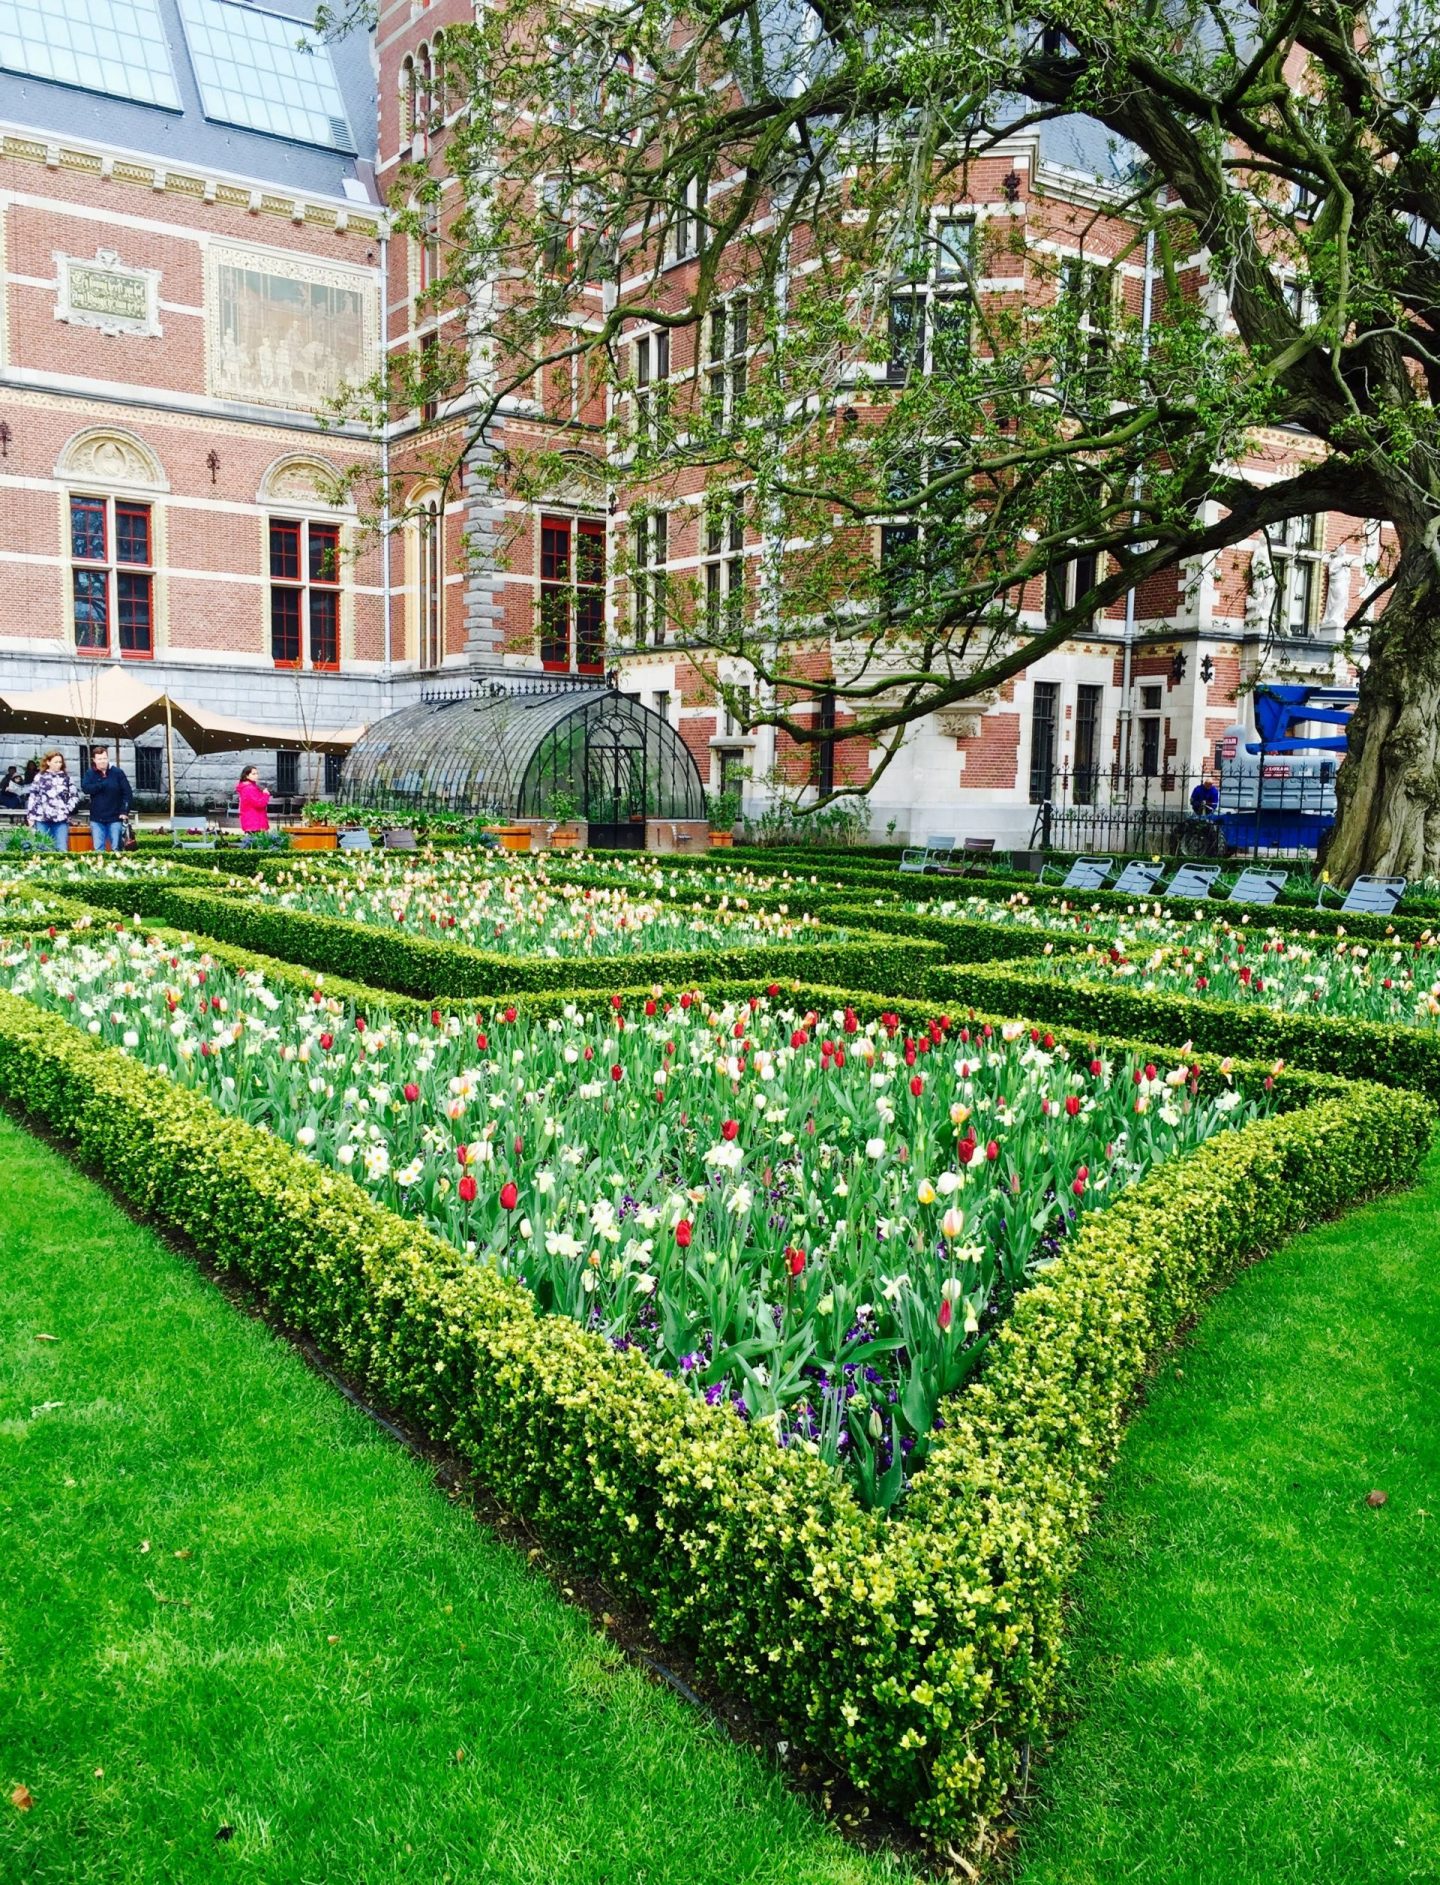 Rijksmuseum gardens